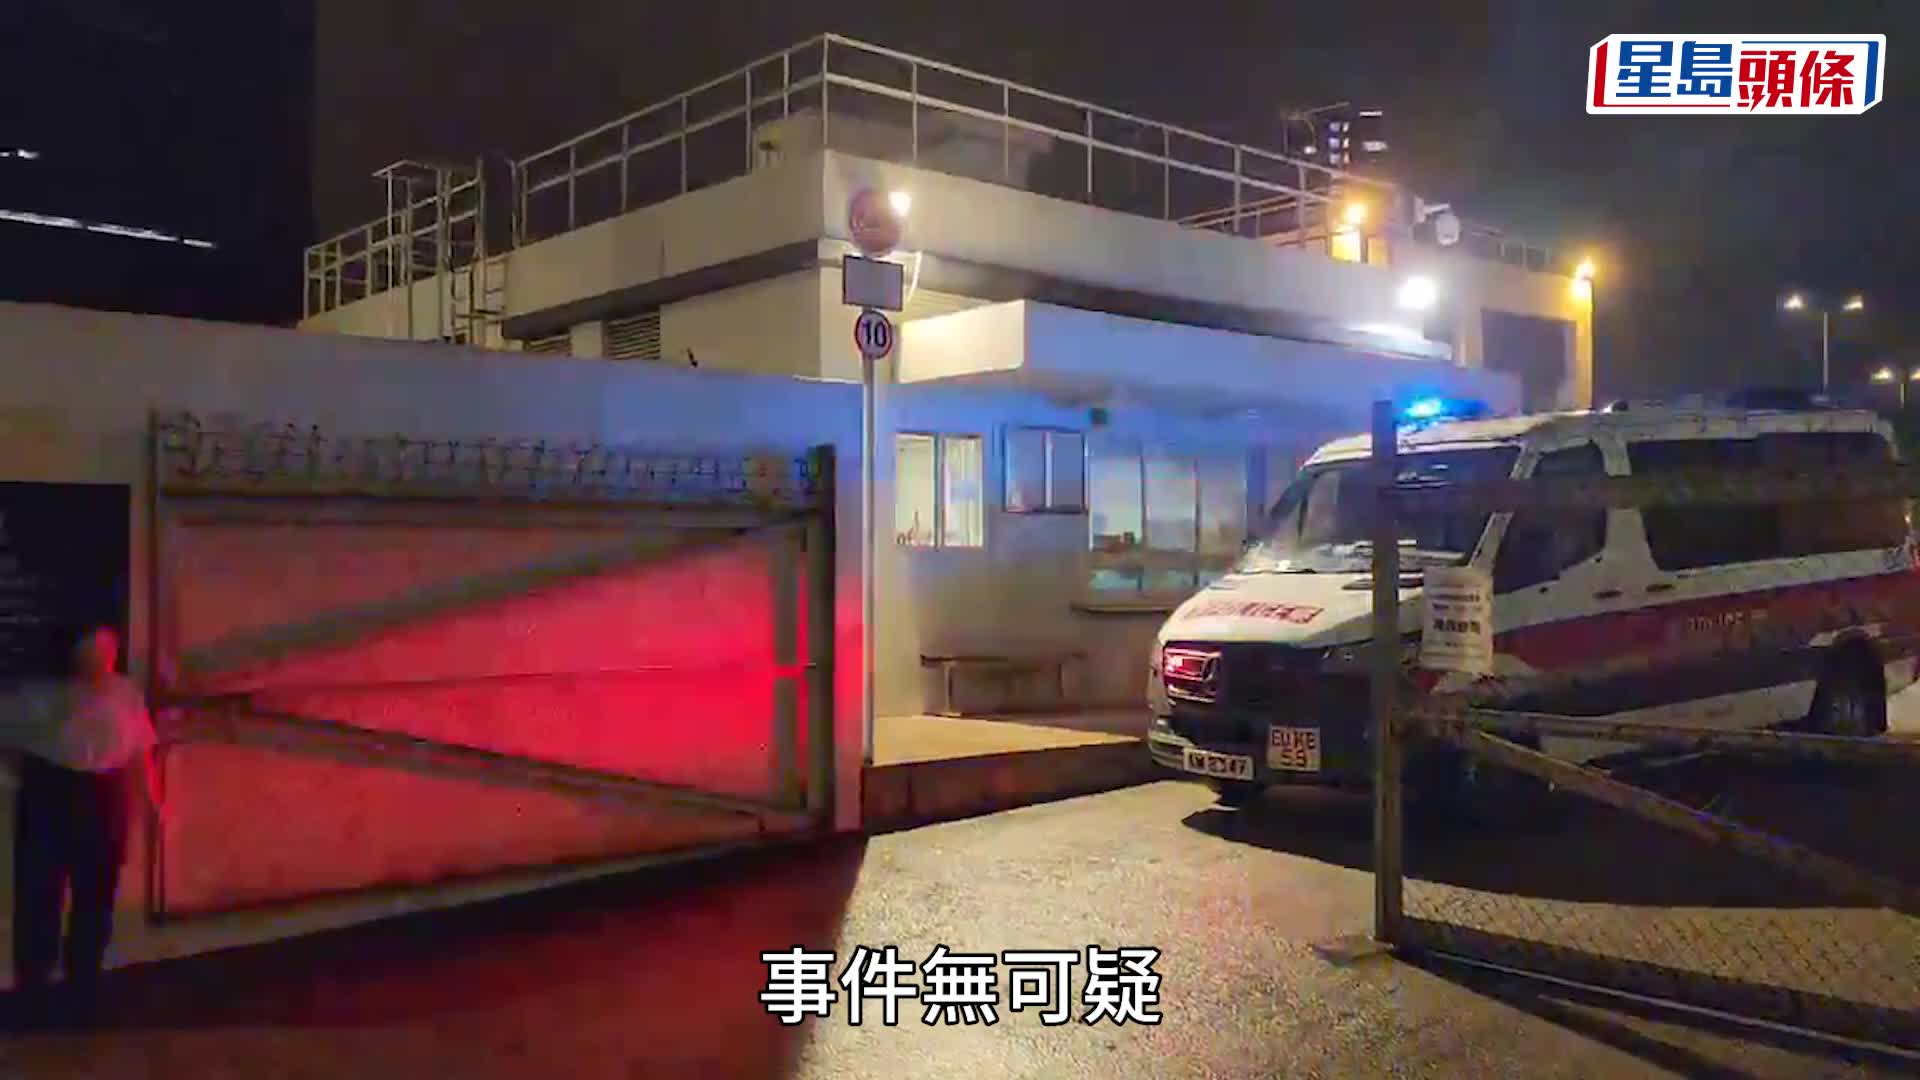 九龍灣車輛扣留中心的士過熱起火  屬早前交通意外拖車